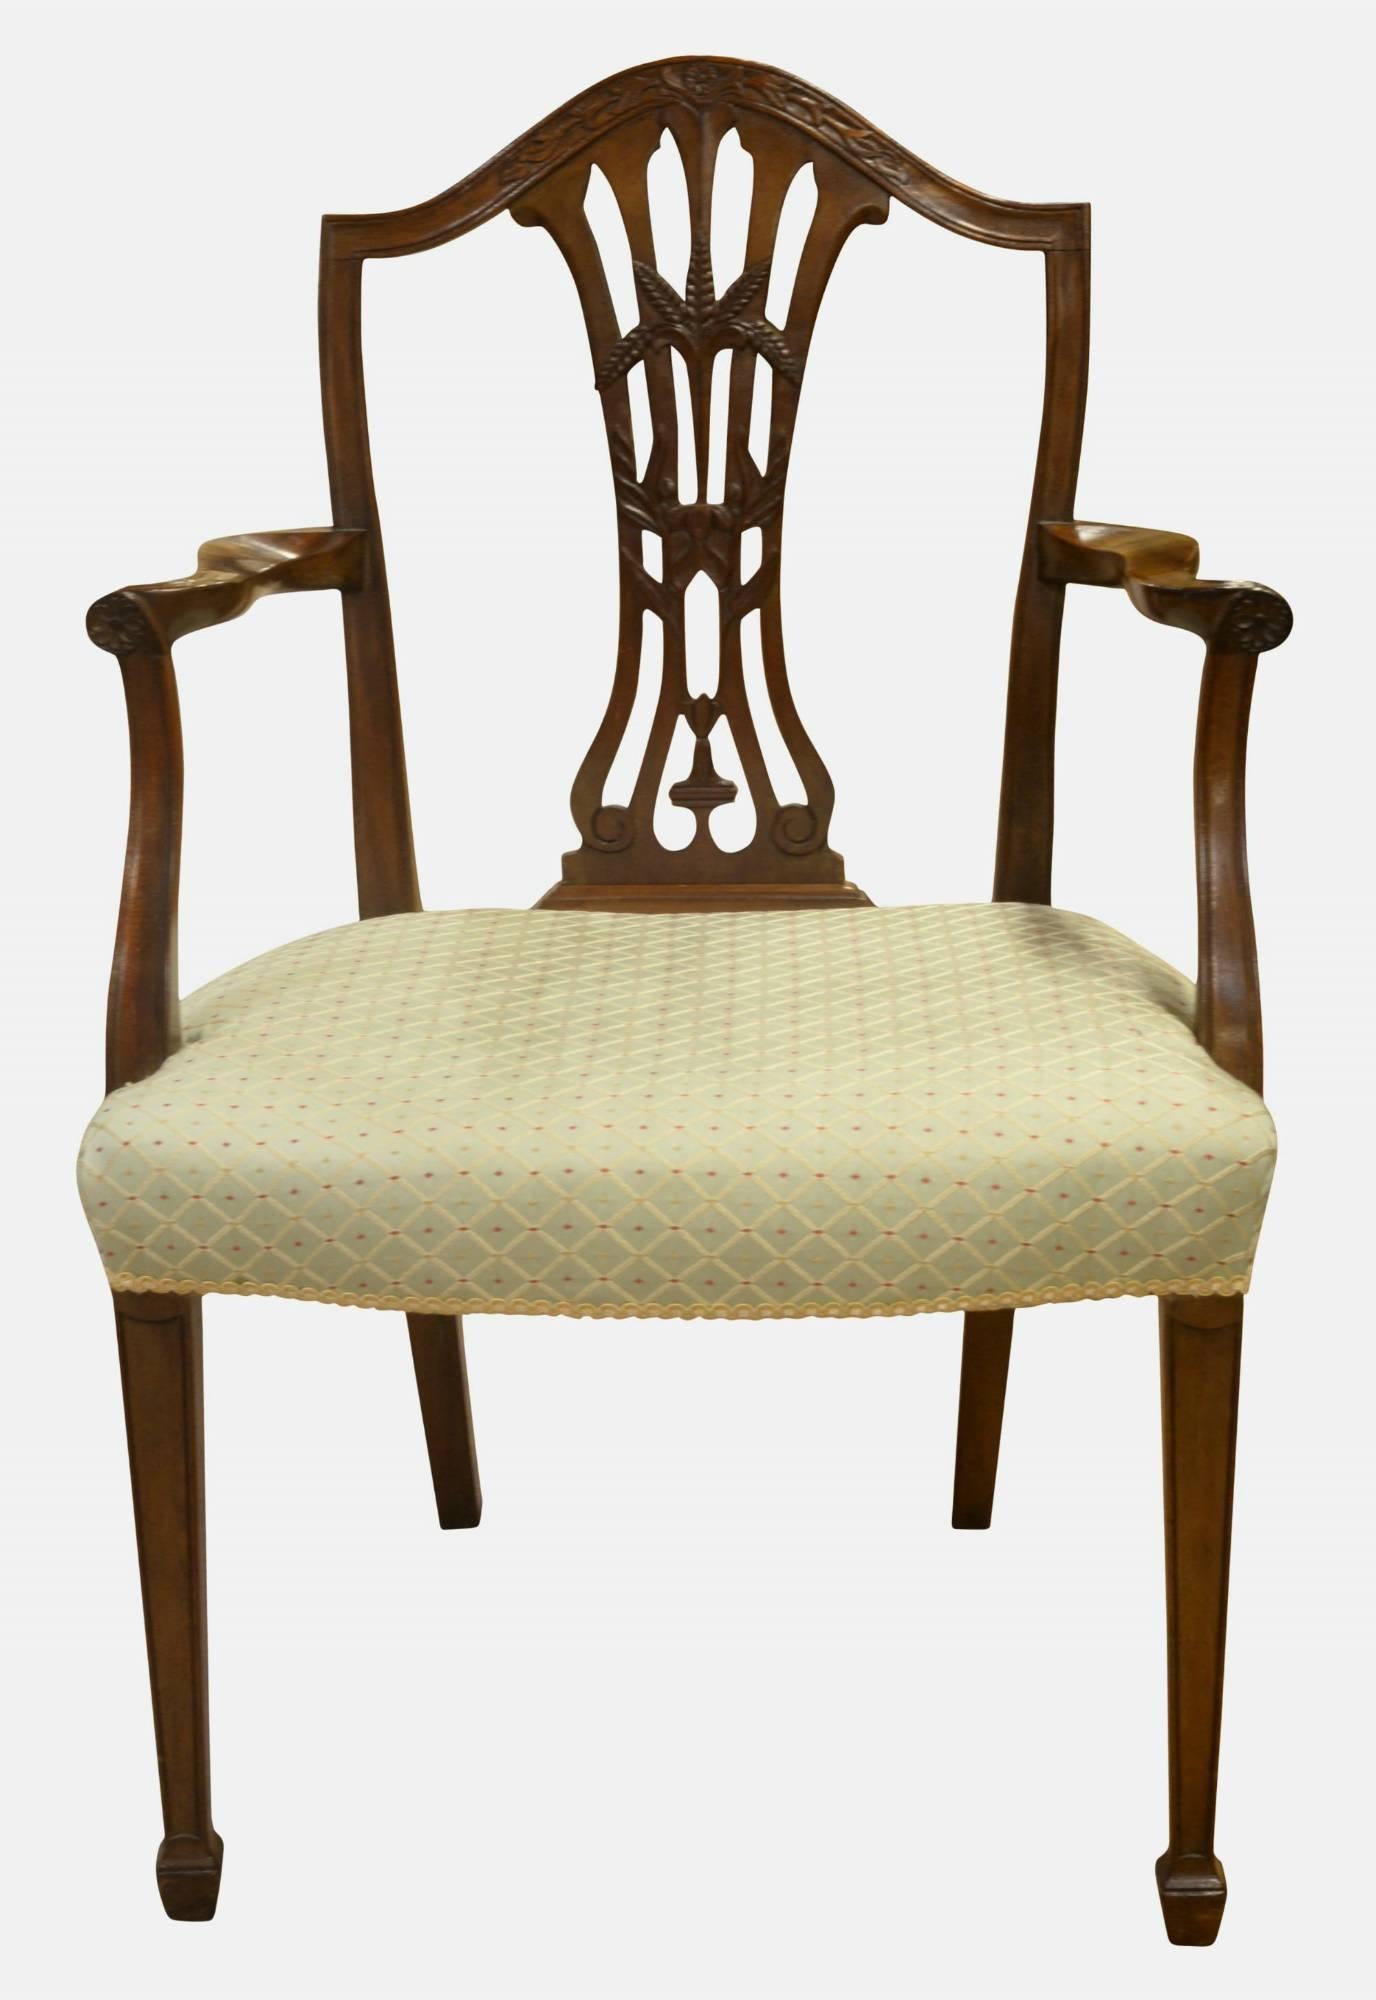 A mahogany Hepplewhite period carver chair,

circa 1780.